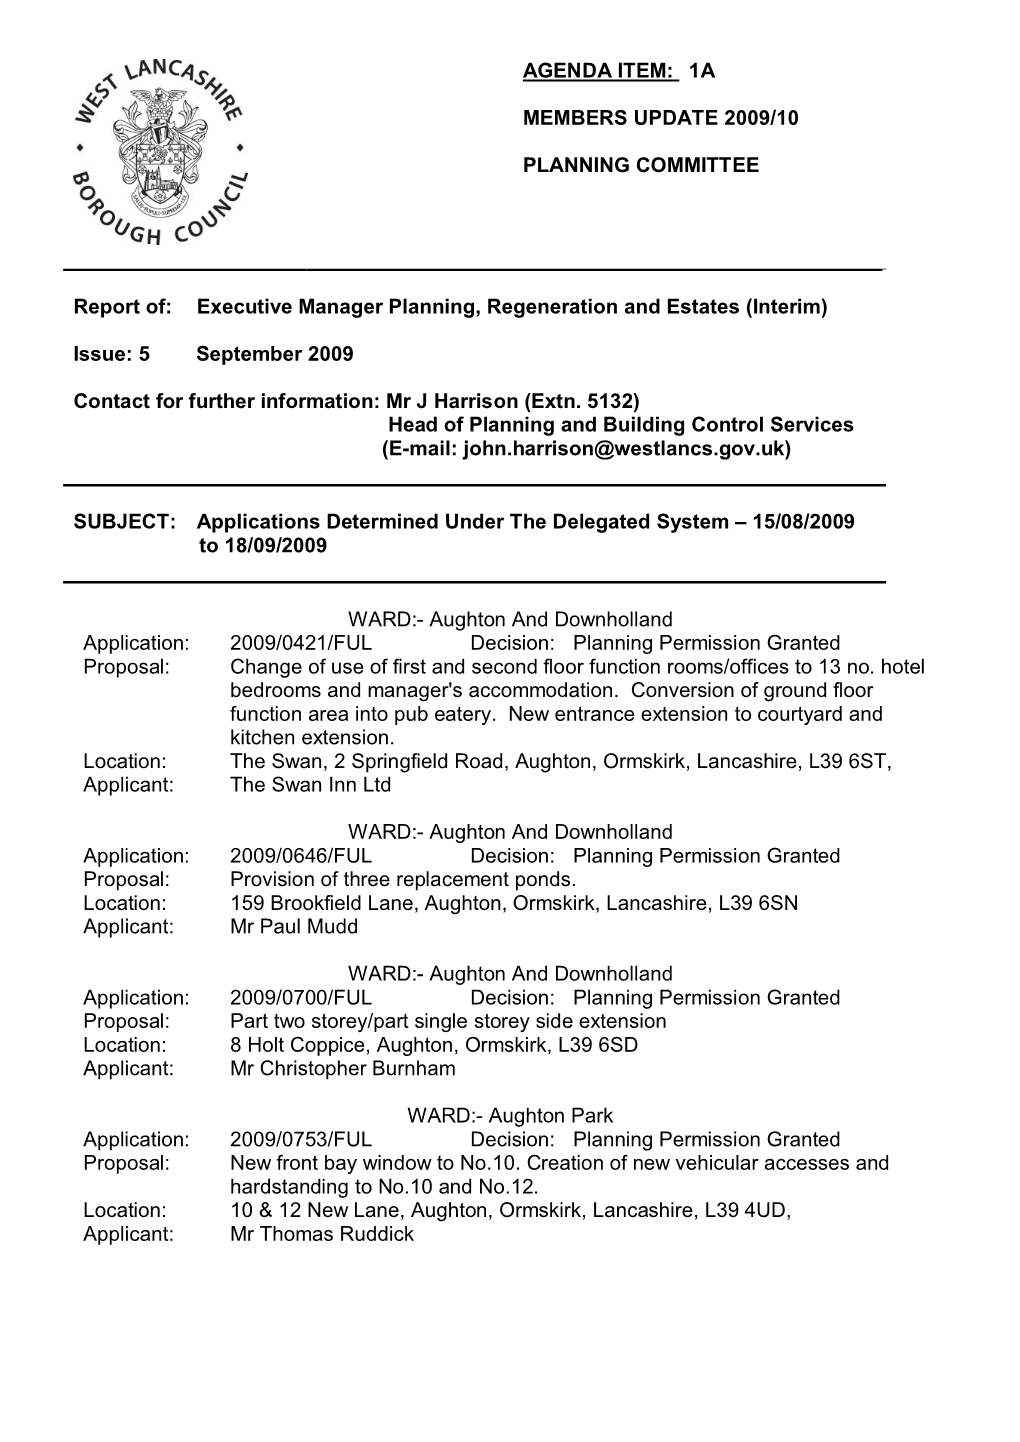 Agenda Item: 1A Members Update 2009/10